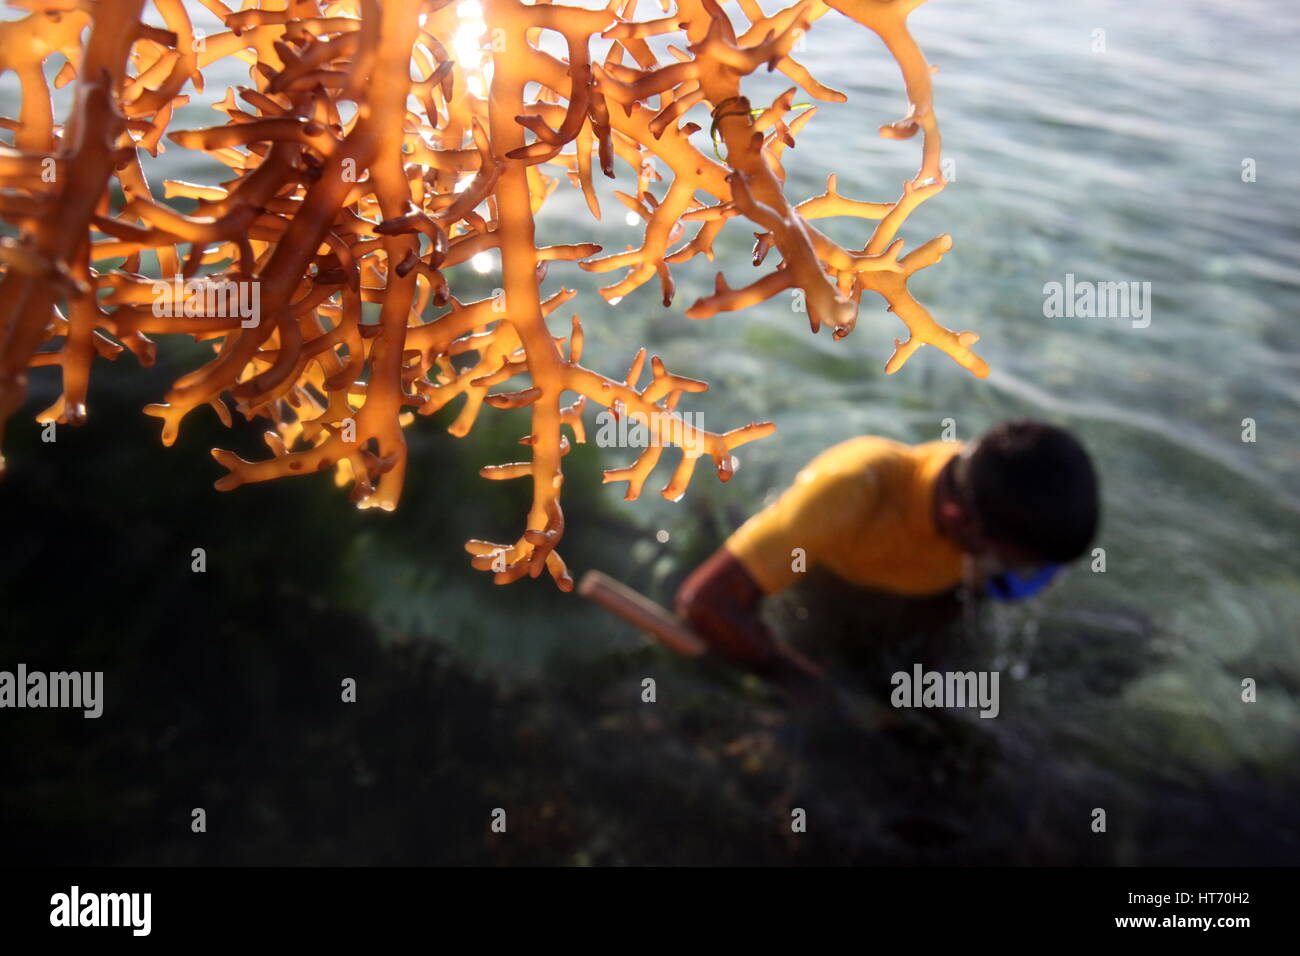 Persone al lavoro su una piantagione seawead sull'isola Nusa Lembongan Island nei pressi dell'Isola Bali in Indonesia in southeastasia Foto Stock